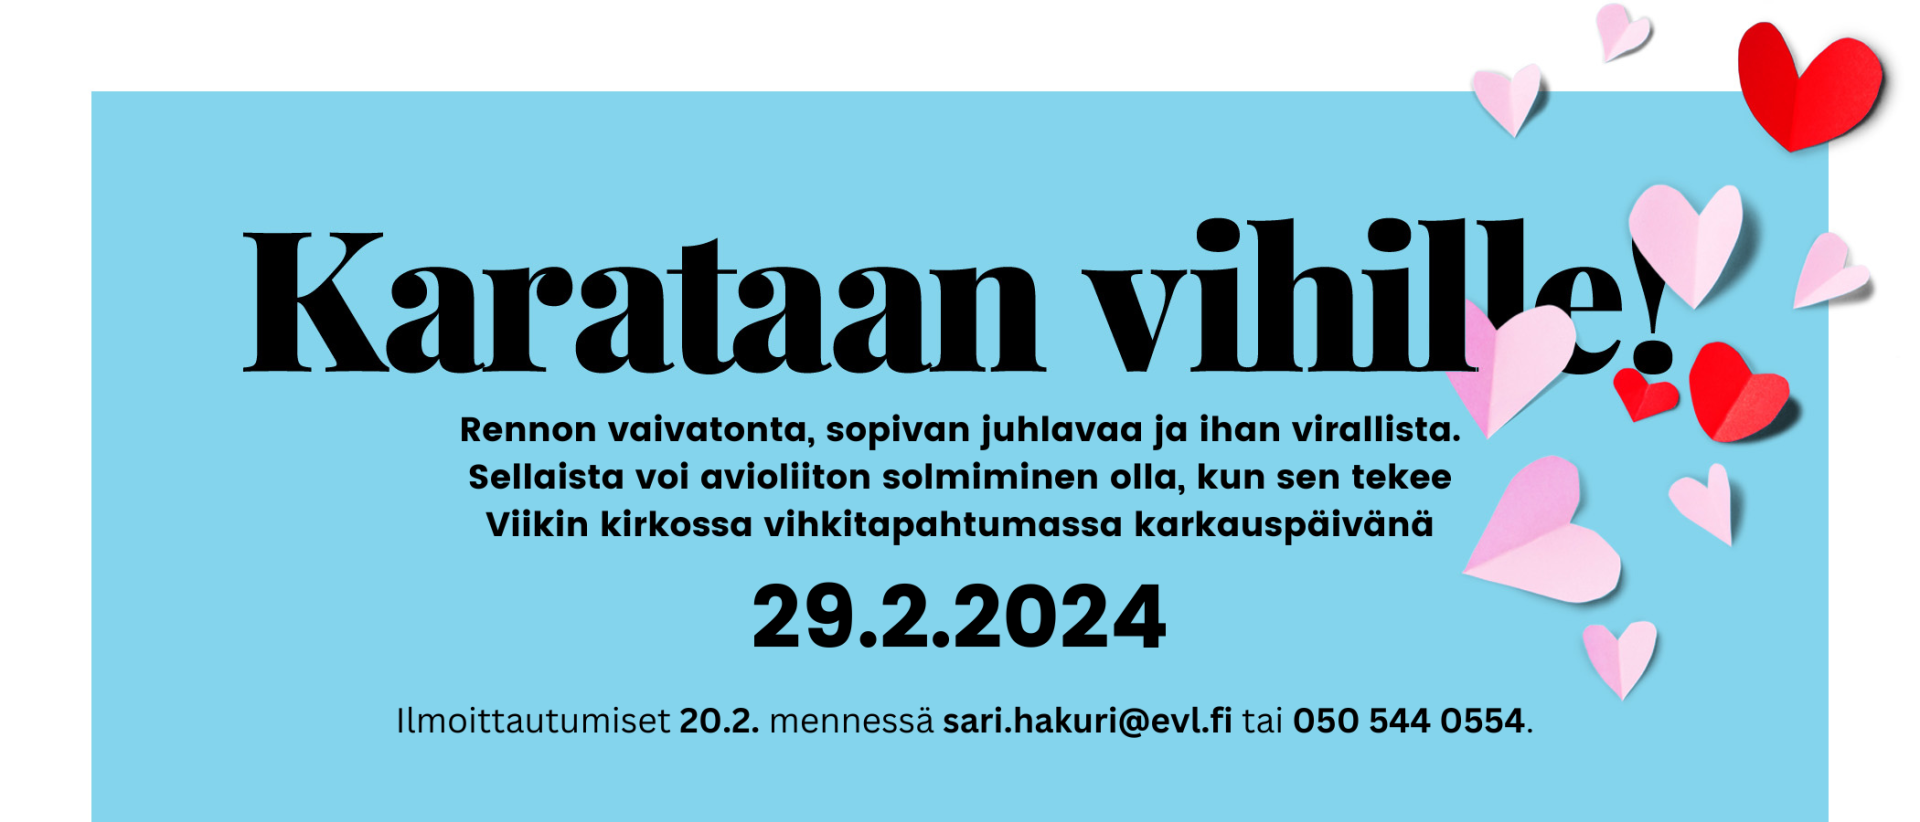 Karataan vihille-häätapahtuman mainos 29.2.2024, jossa tapahtuman tiedot tekstinä sinisellä pohjalla